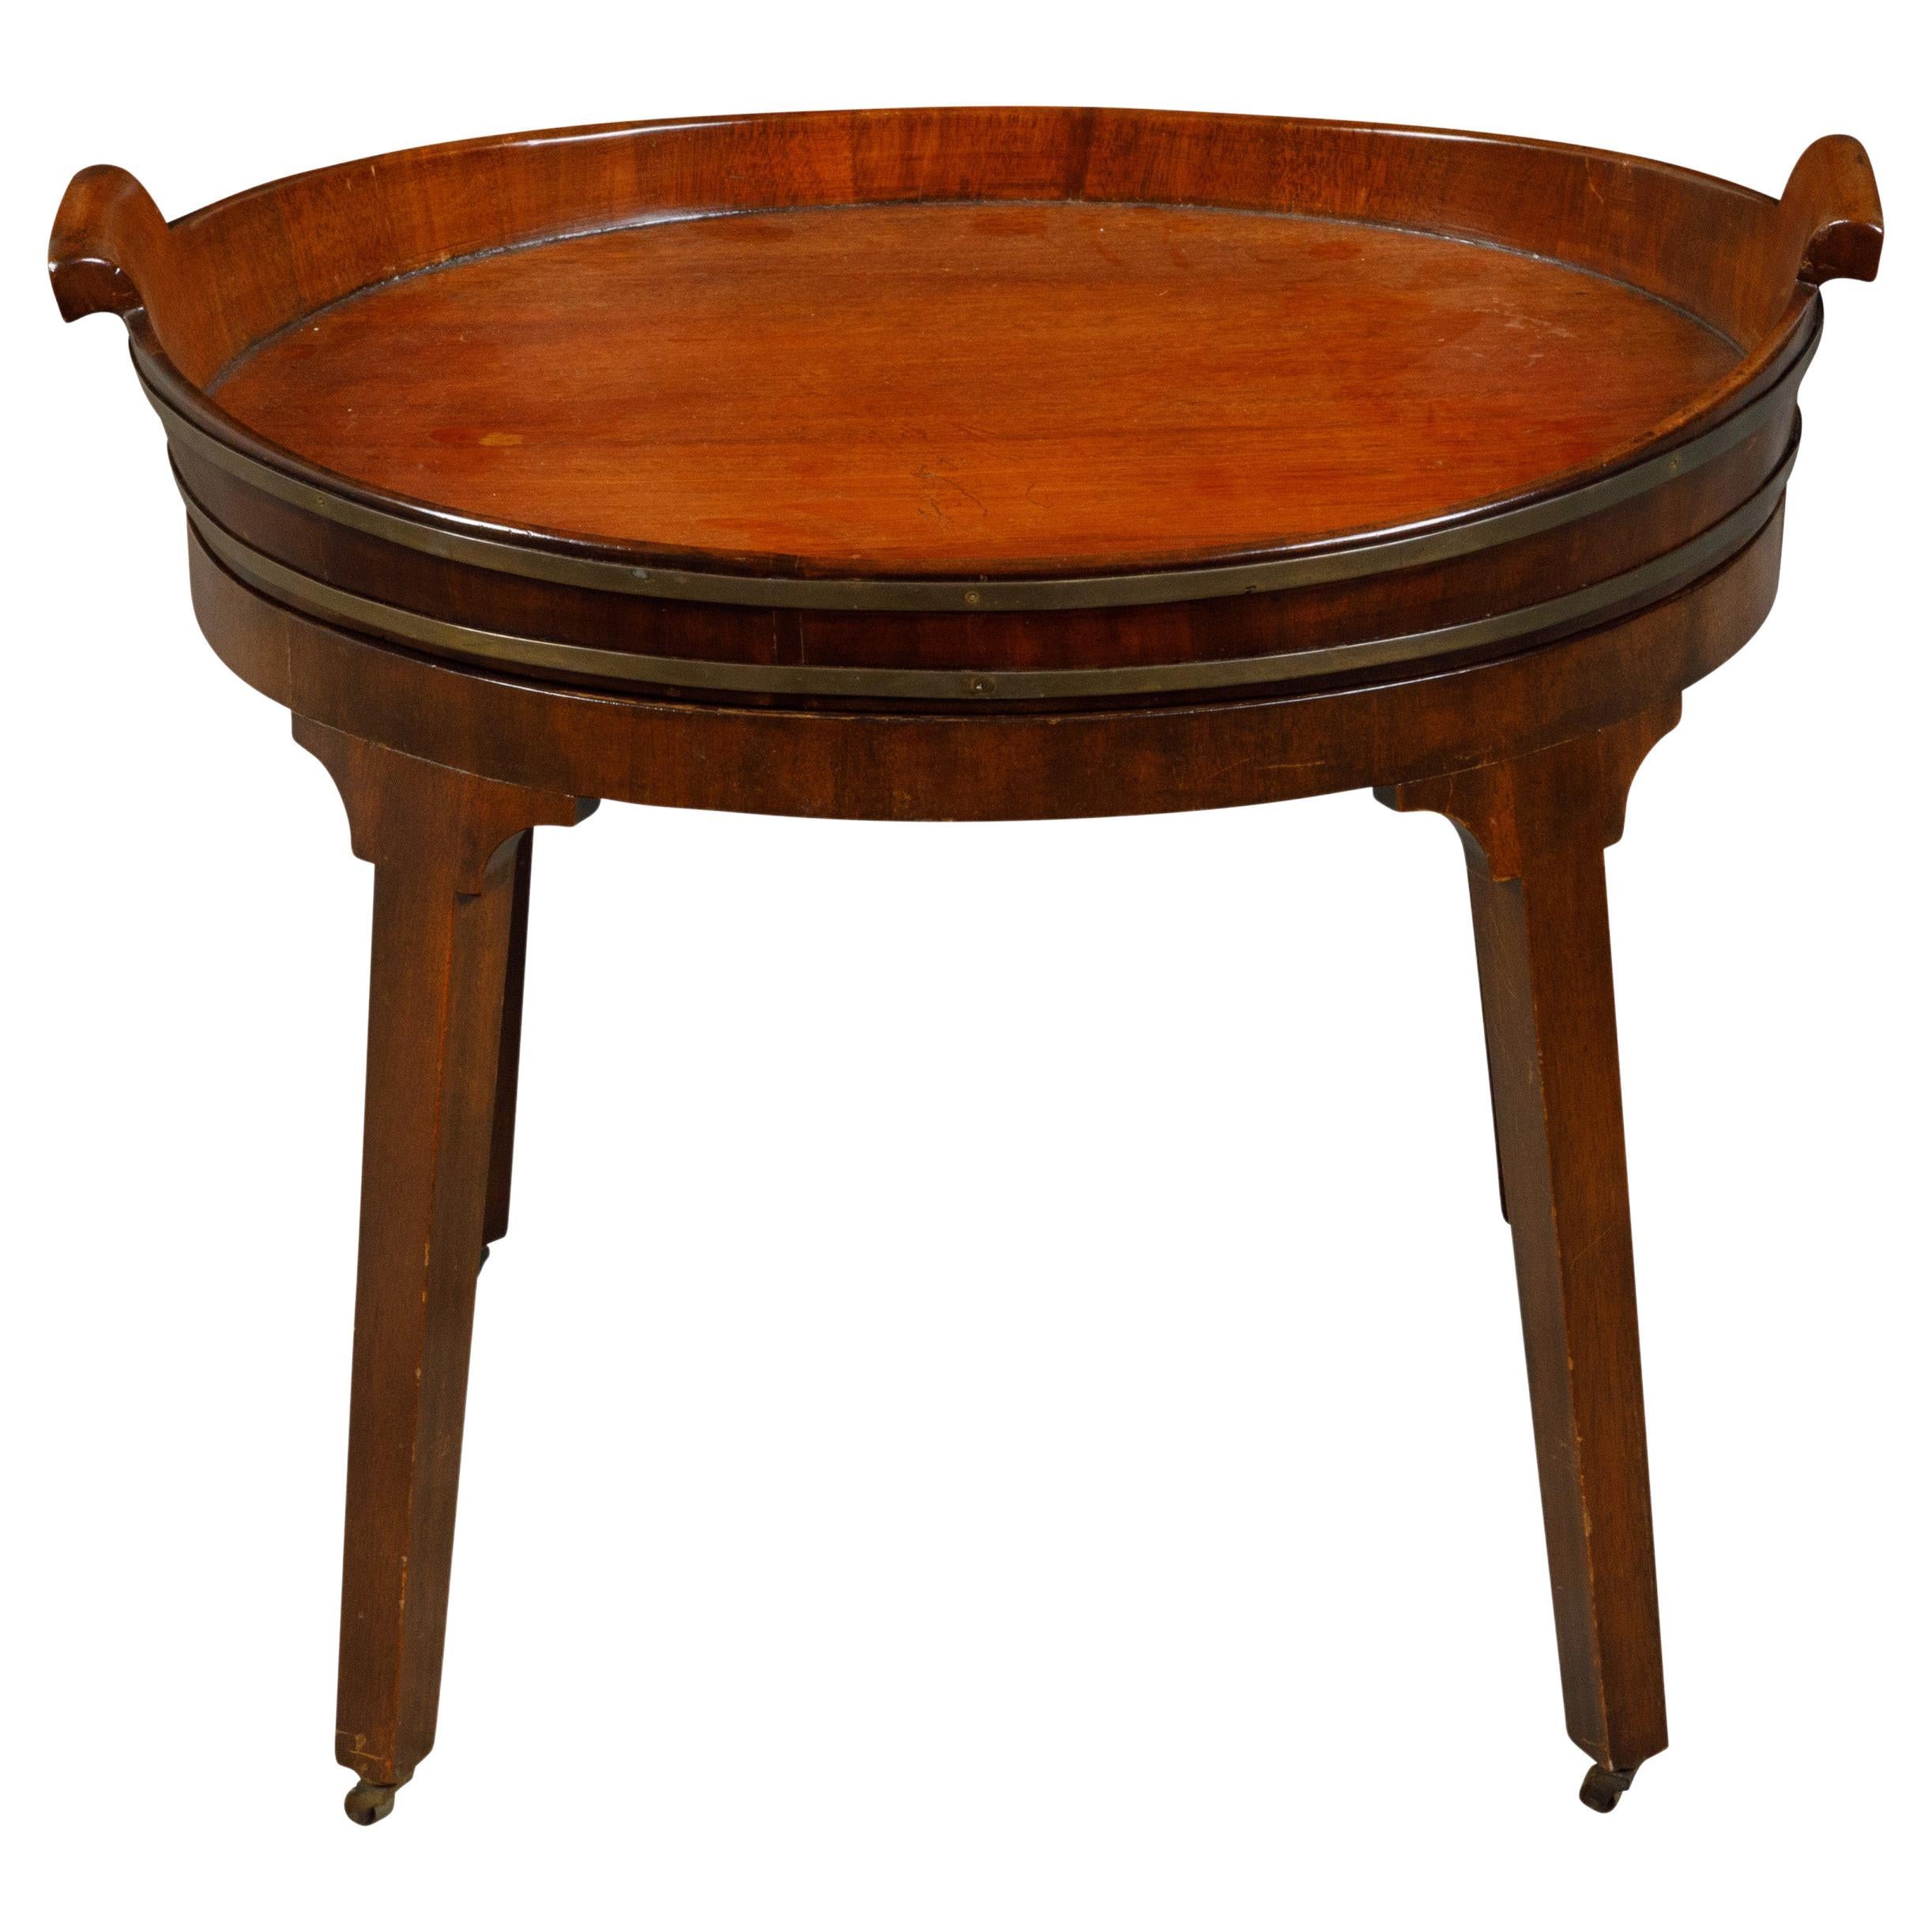 Englischer ovaler Mahagoni-Tisch mit Tablettplatte aus dem 19. Jahrhundert mit Messingakzenten und Rollen